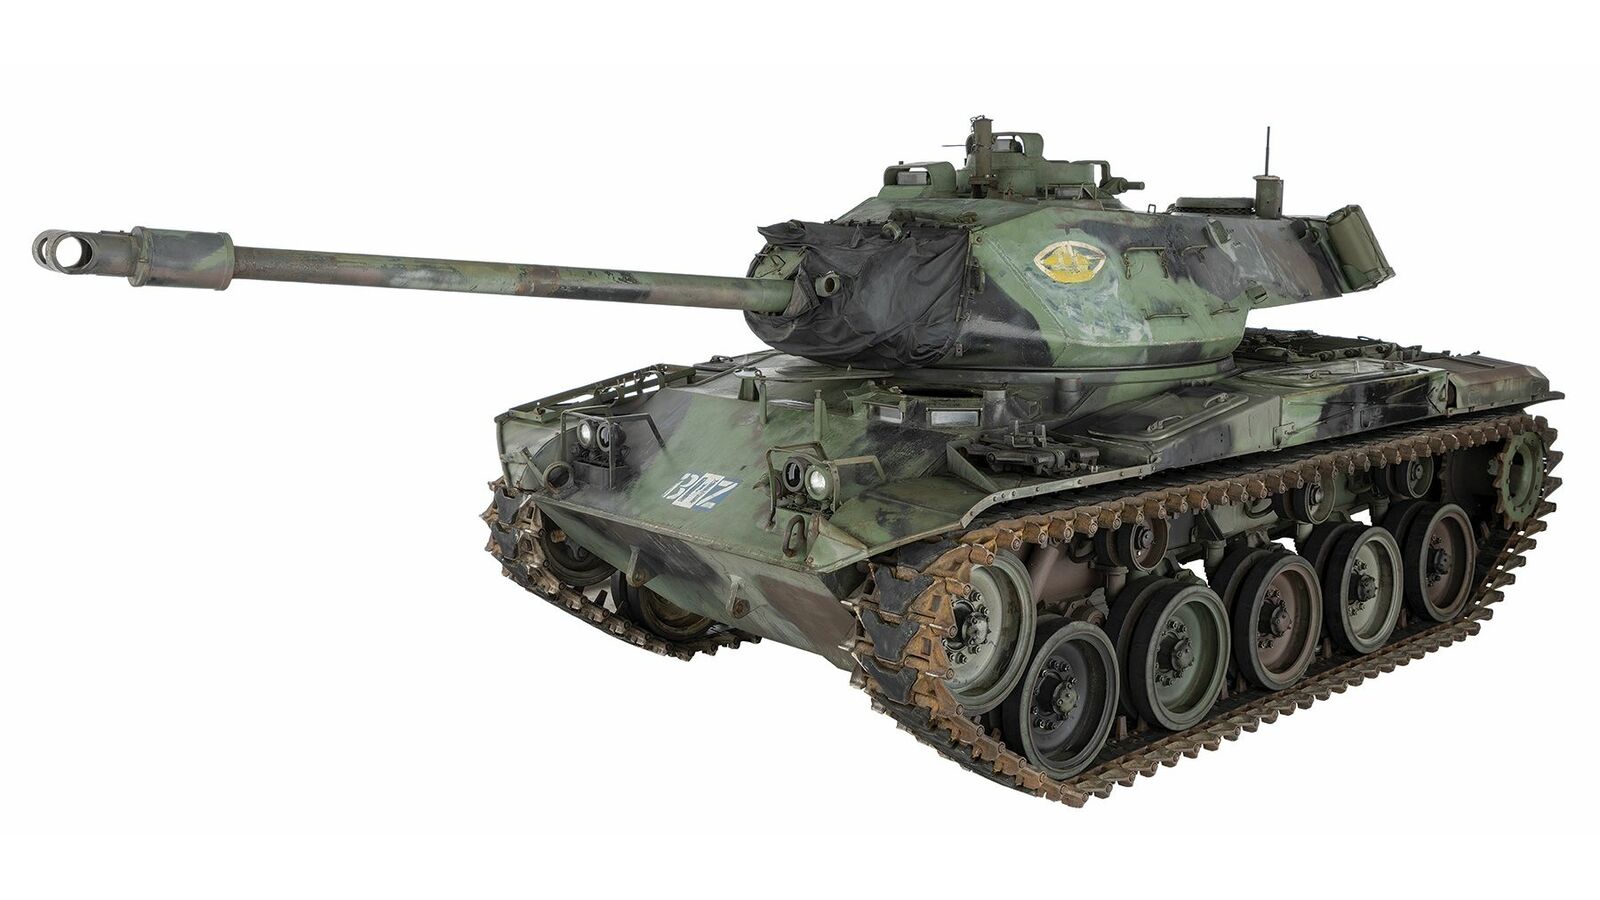 U.S. M41A1 Walker Bulldog Light Tank